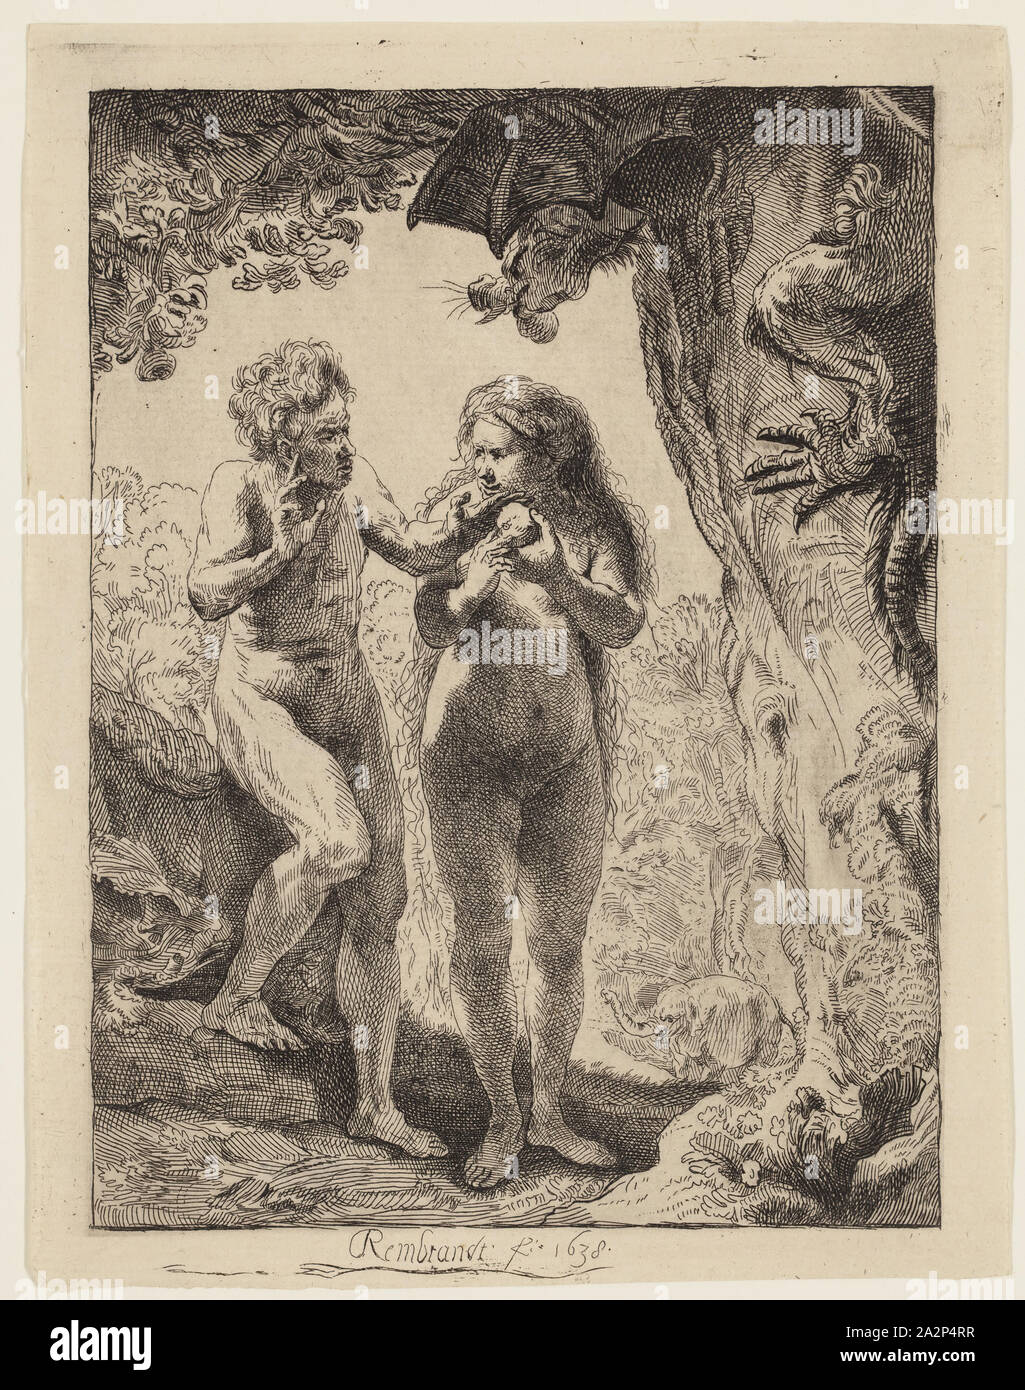 Adam et Eve. Rembrandt van Rijn, néerlandais, 1606-1669. Date : 1638.  Dimensions : 162 x 116 mm. Gravure sur papier vergé ivoire. Origine :  Pays-Bas. Musée : le Chicago Art Institute. Auteur :